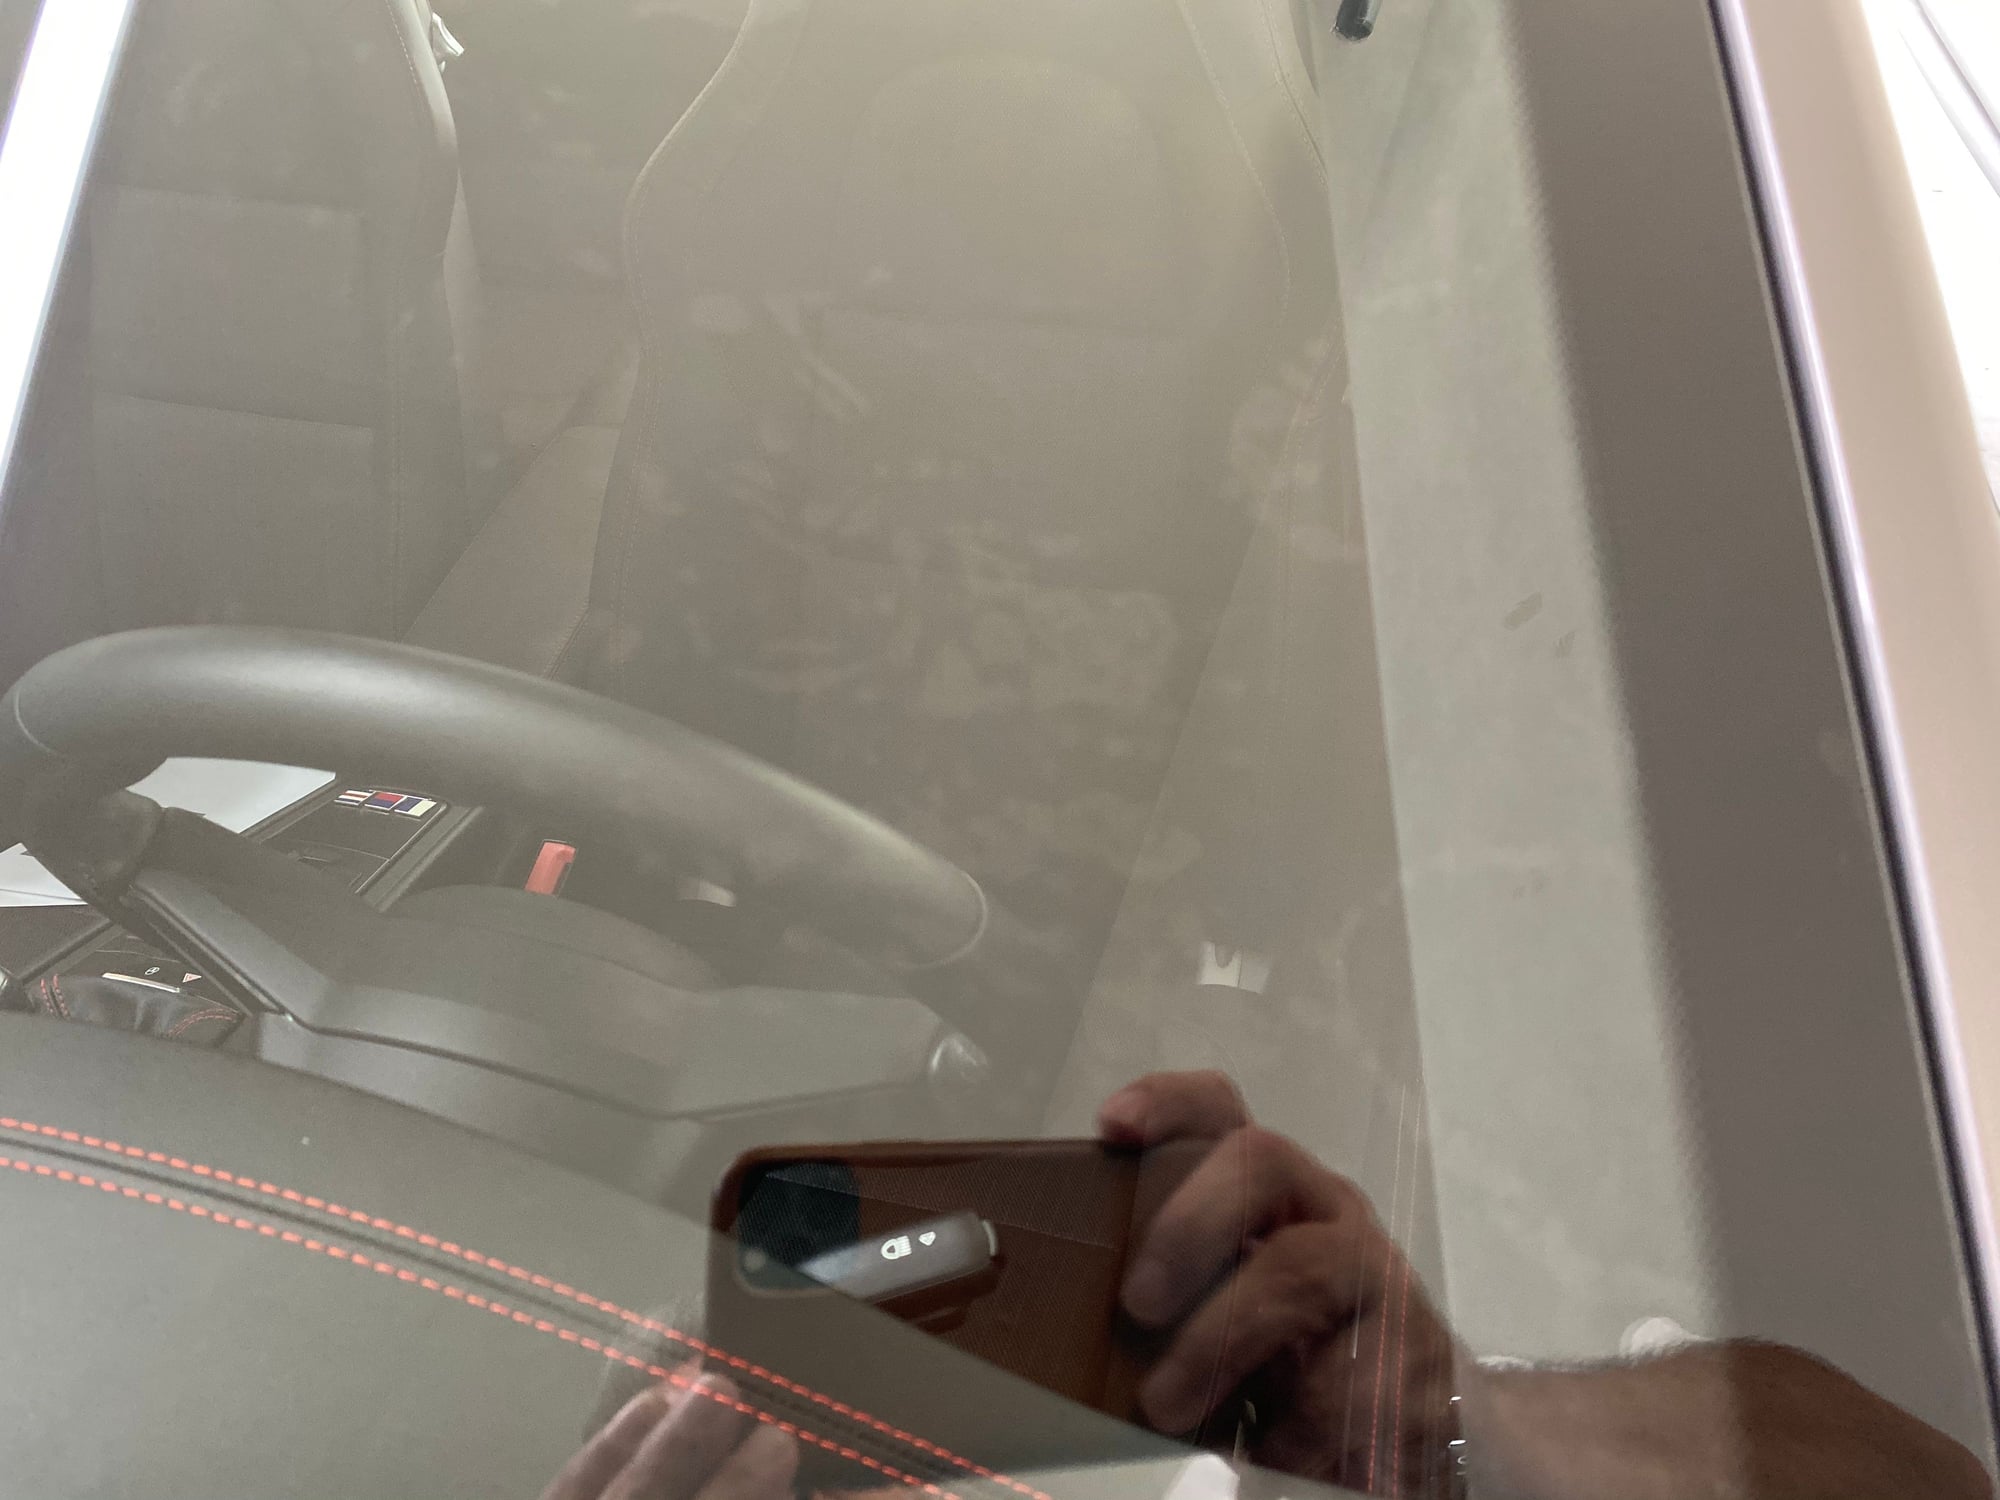 ExoShield windshield protection... - Rennlist - Porsche Discussion Forums